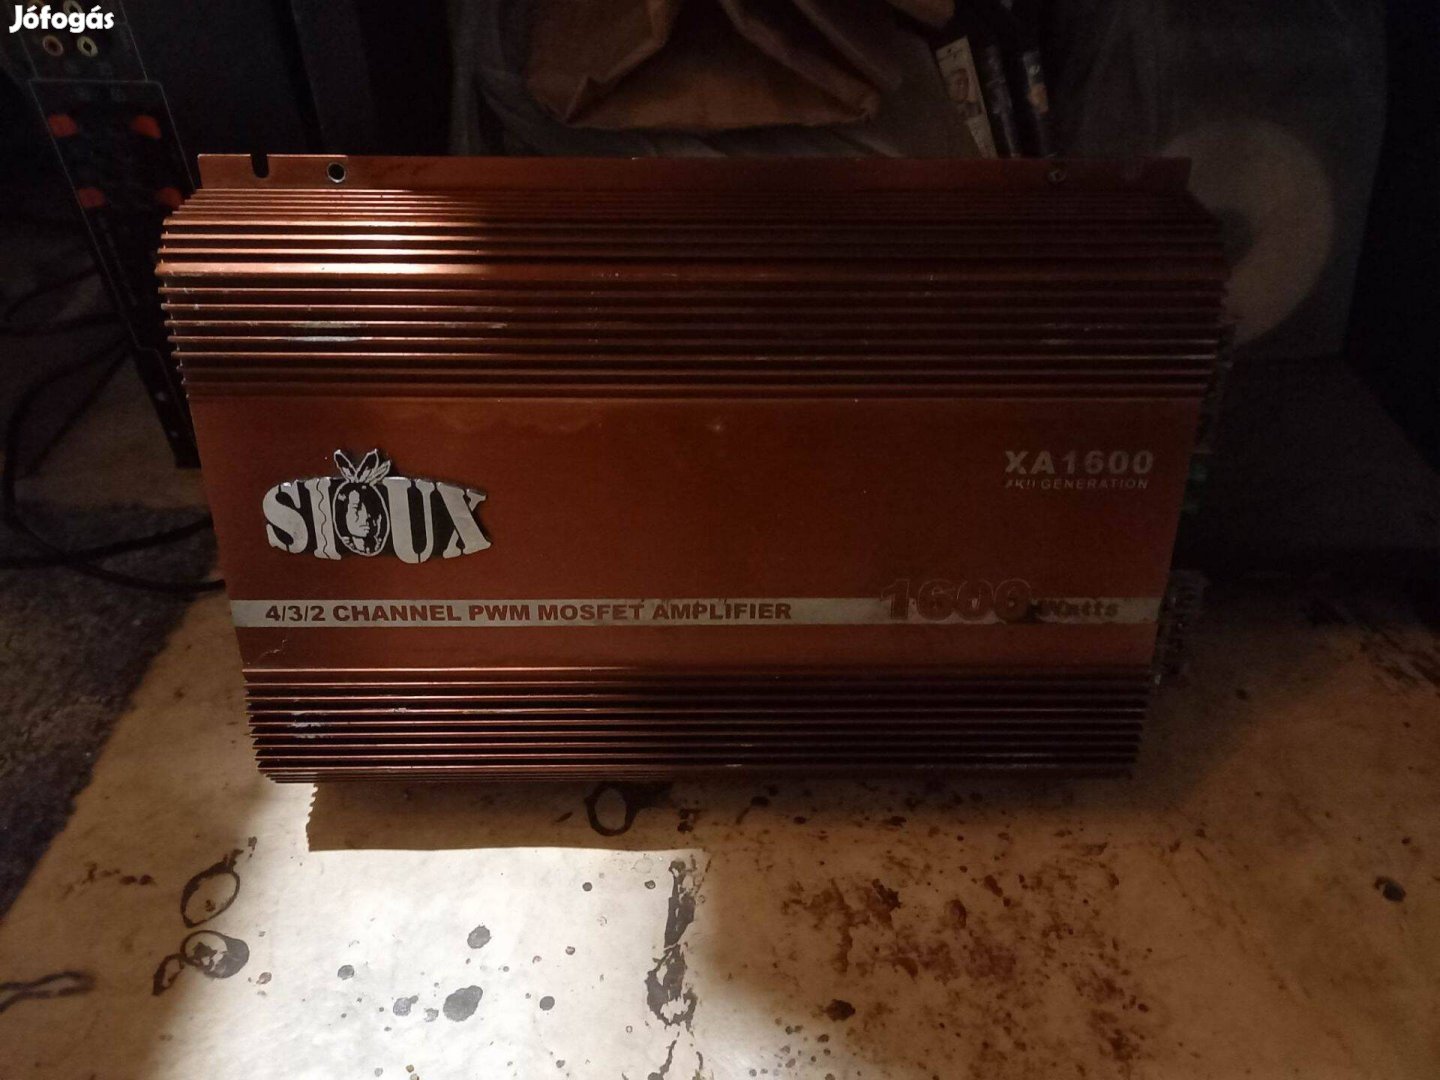 Sioux XA1600 erösitö, 4 csatorna 1600 watt